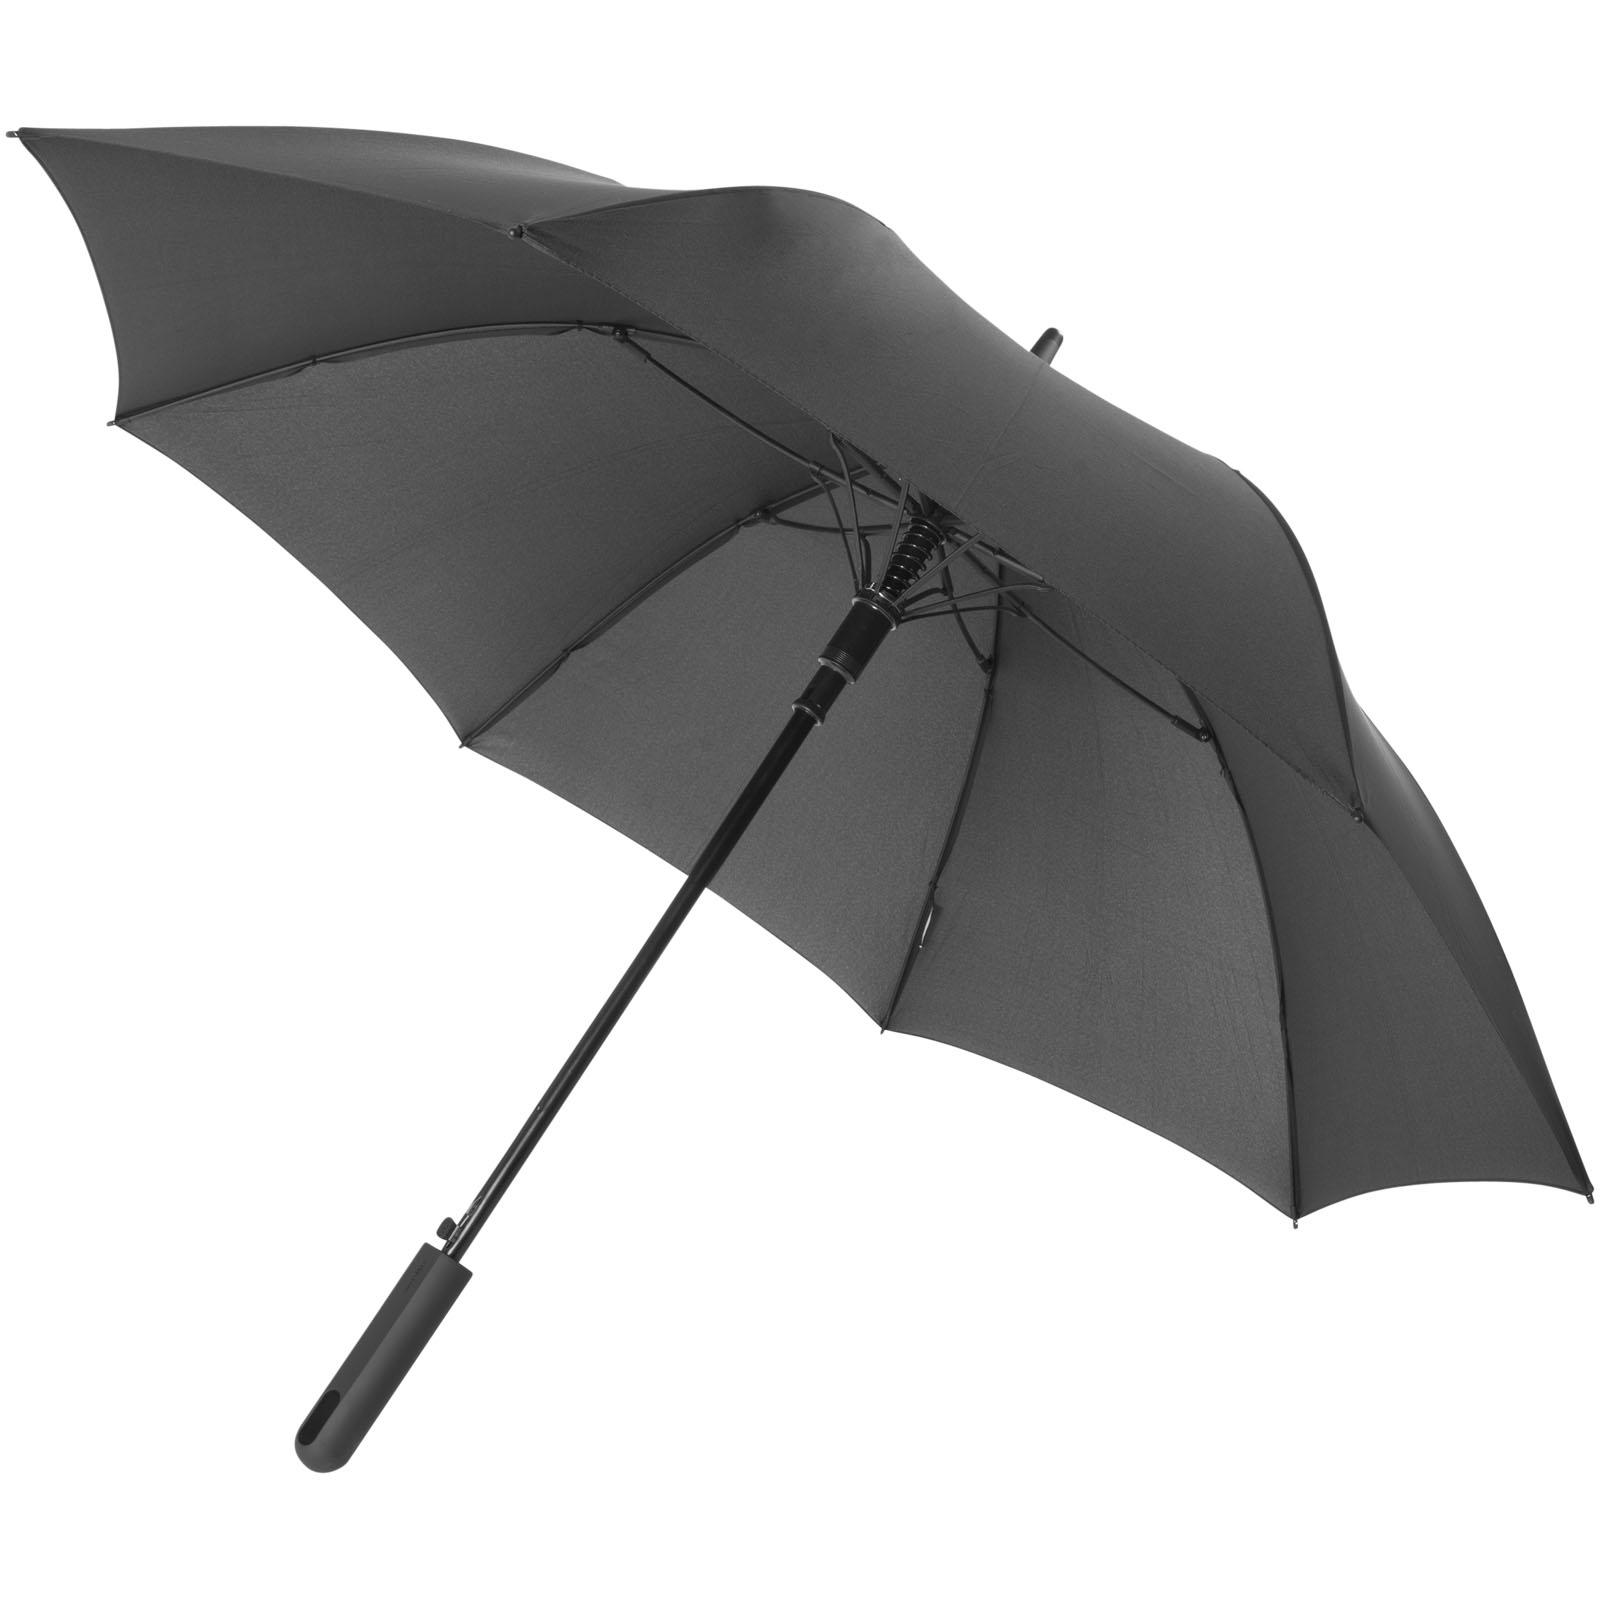 Parapluies tempête - Parapluie tempête à ouverture automatique 23